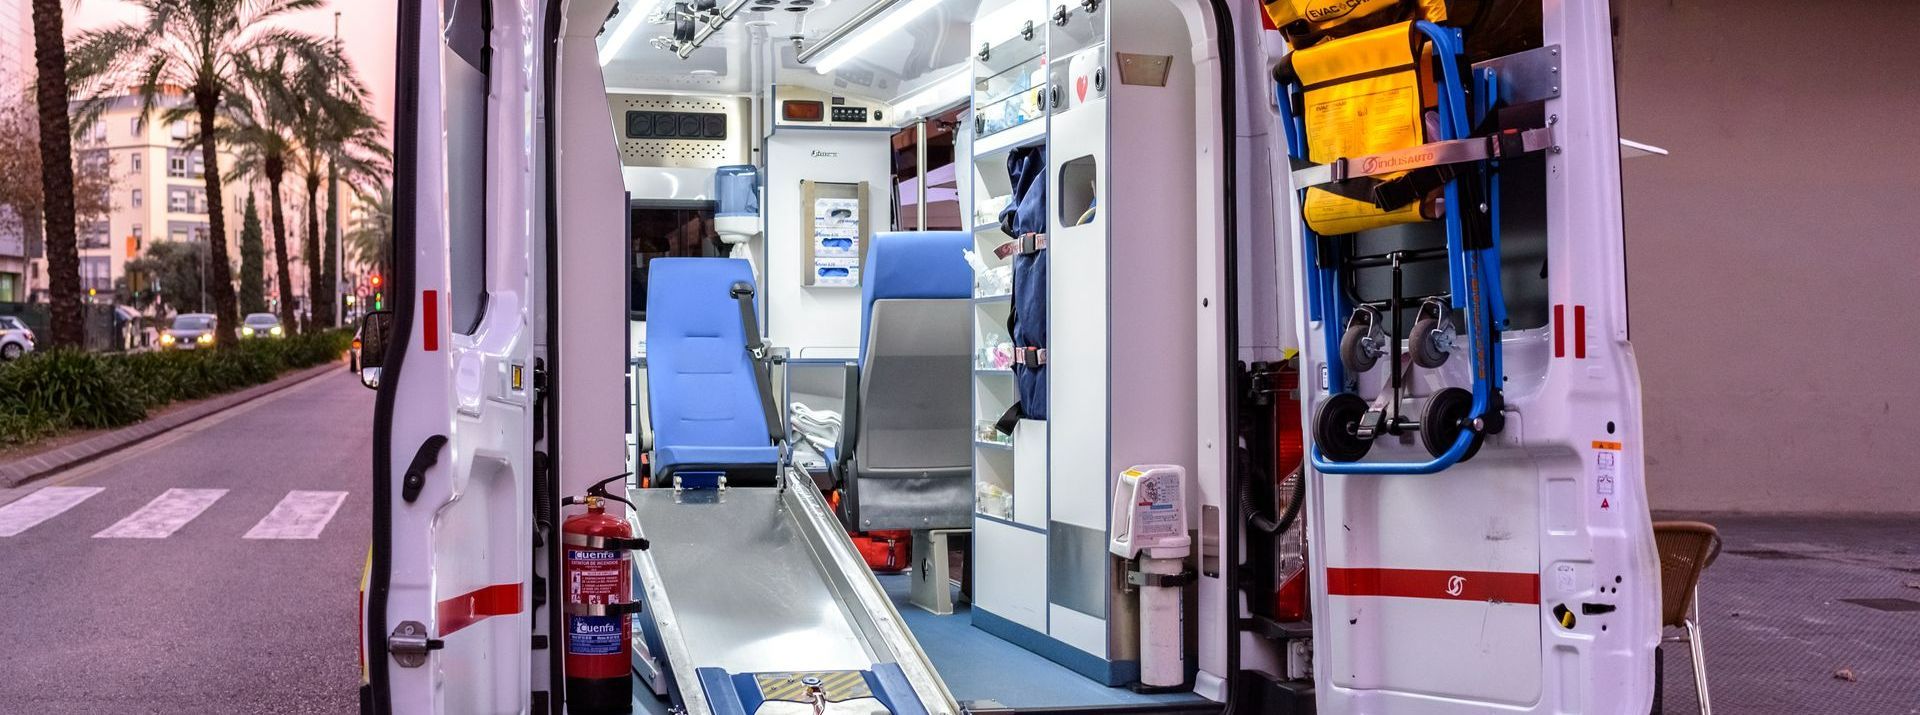 L'intérieur d'une ambulance de secours